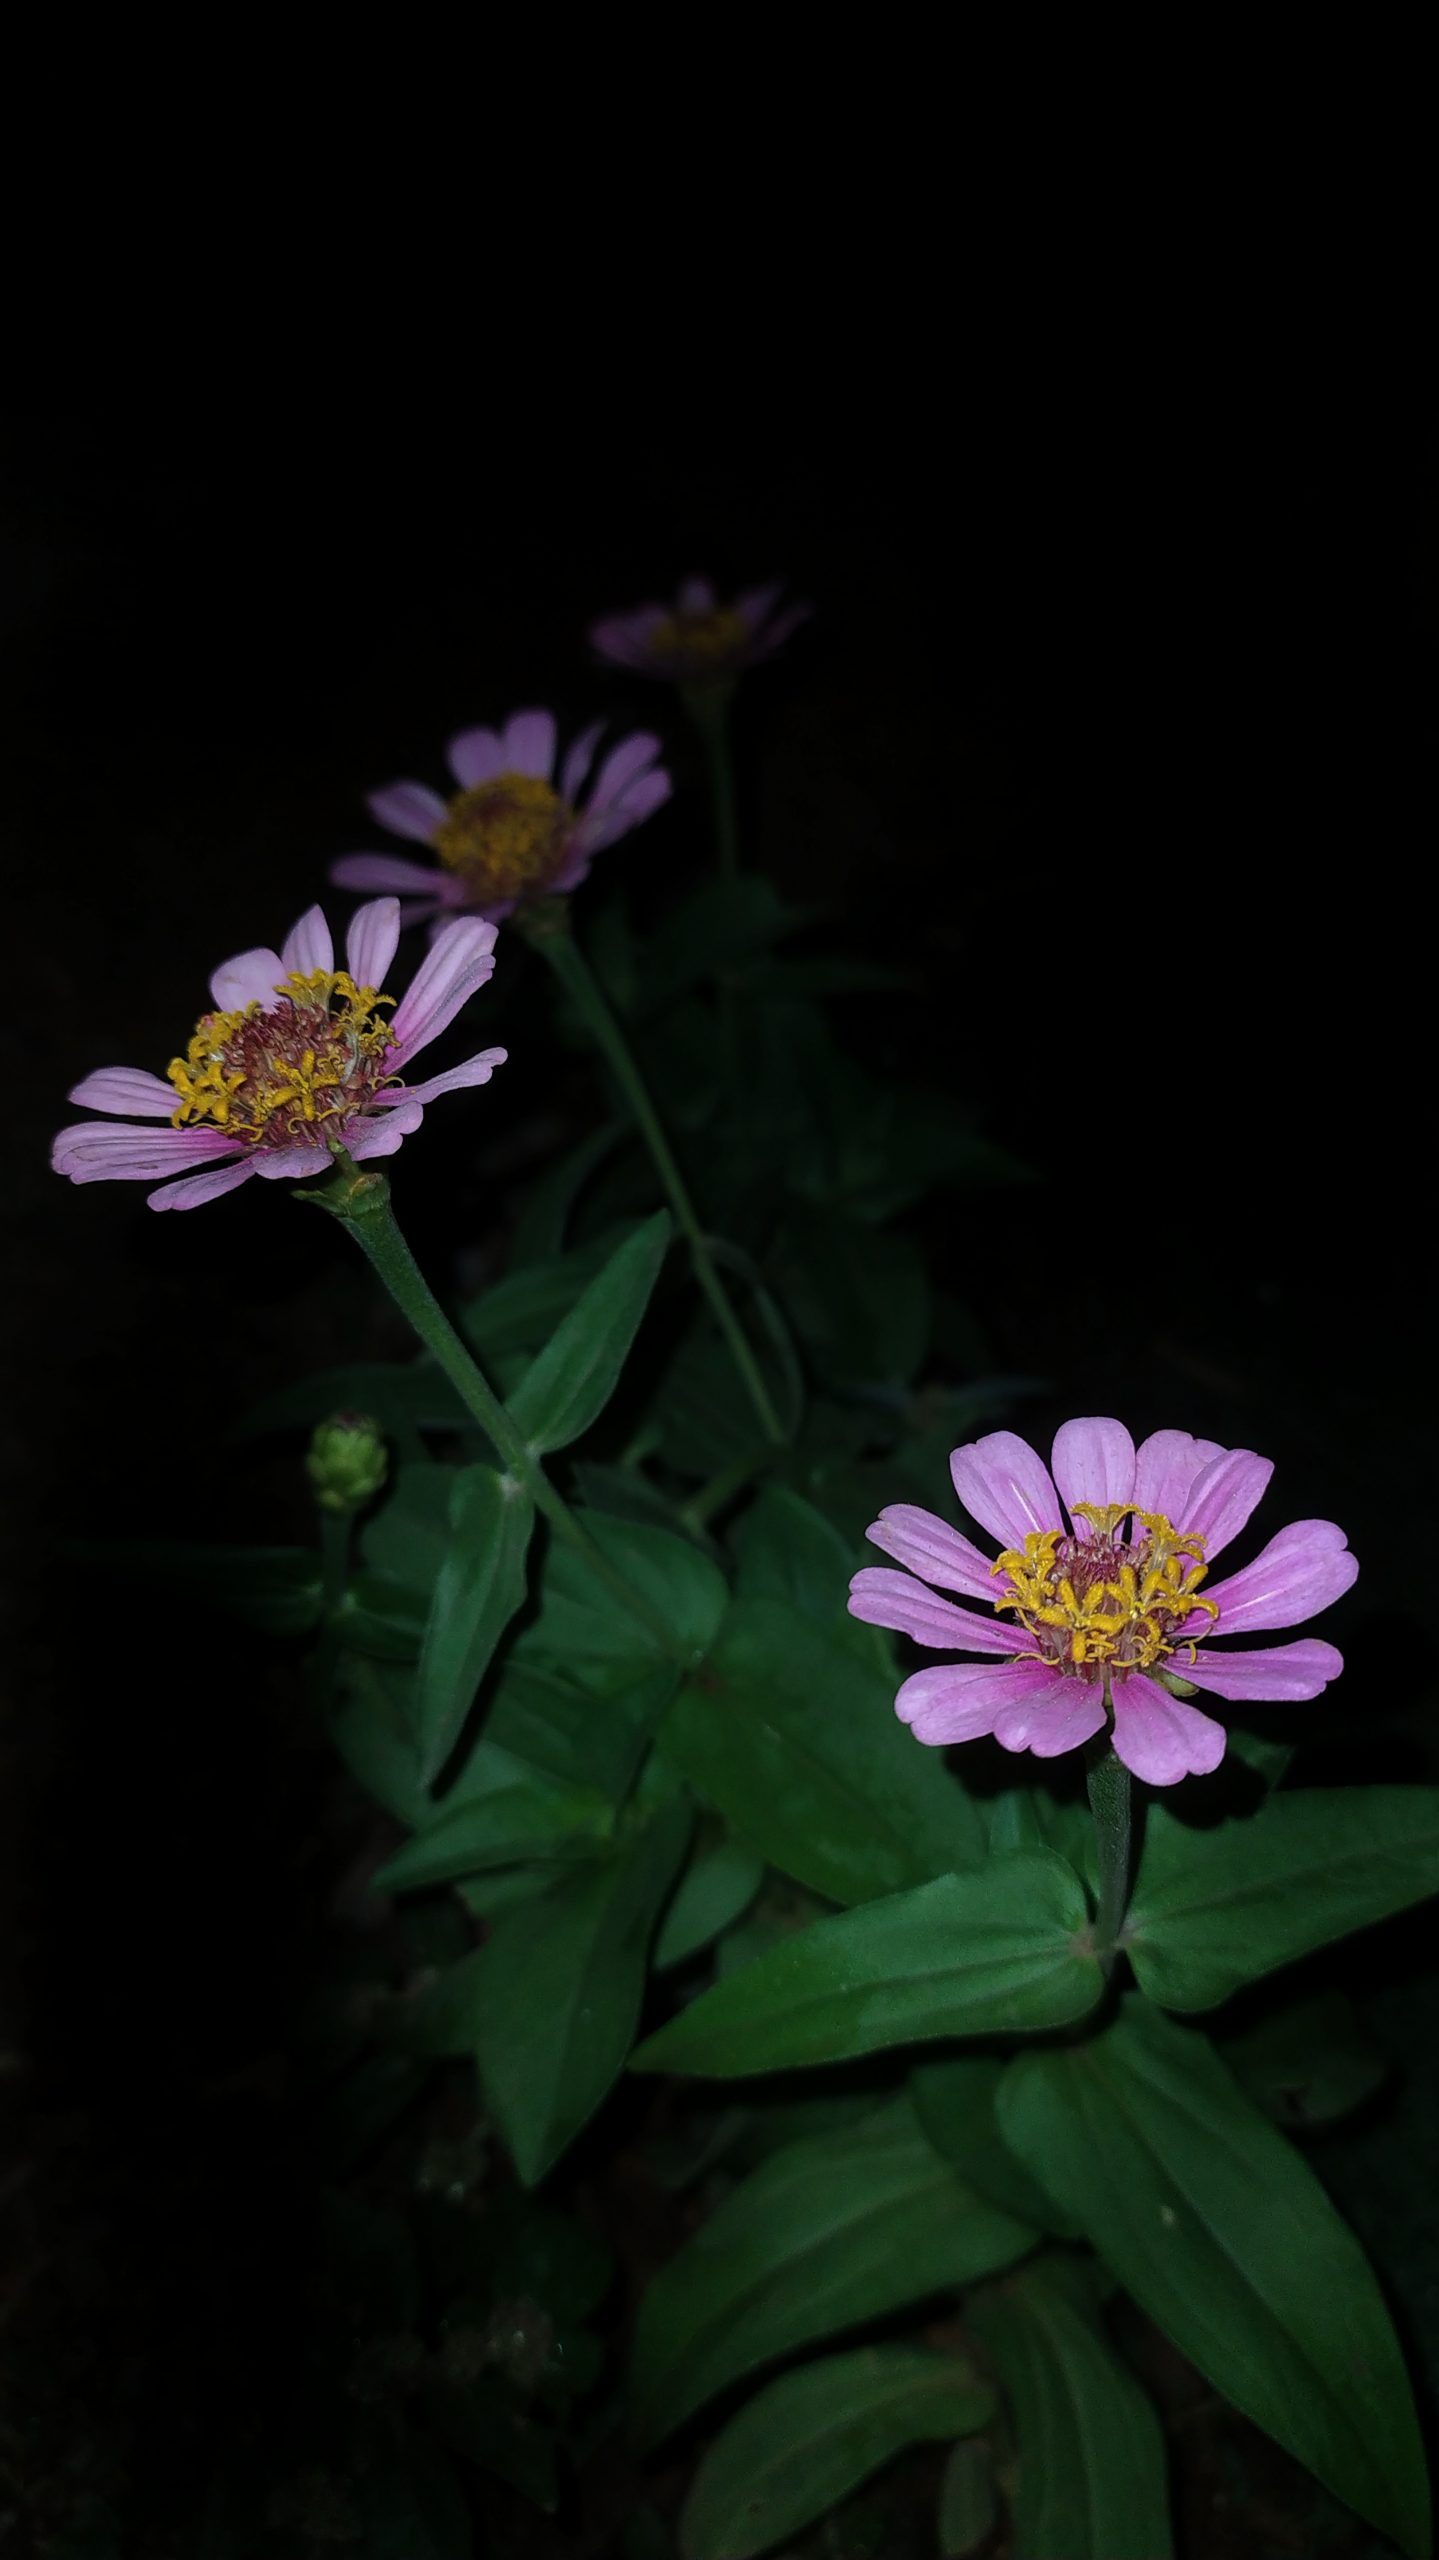 Flowers of Gerbera